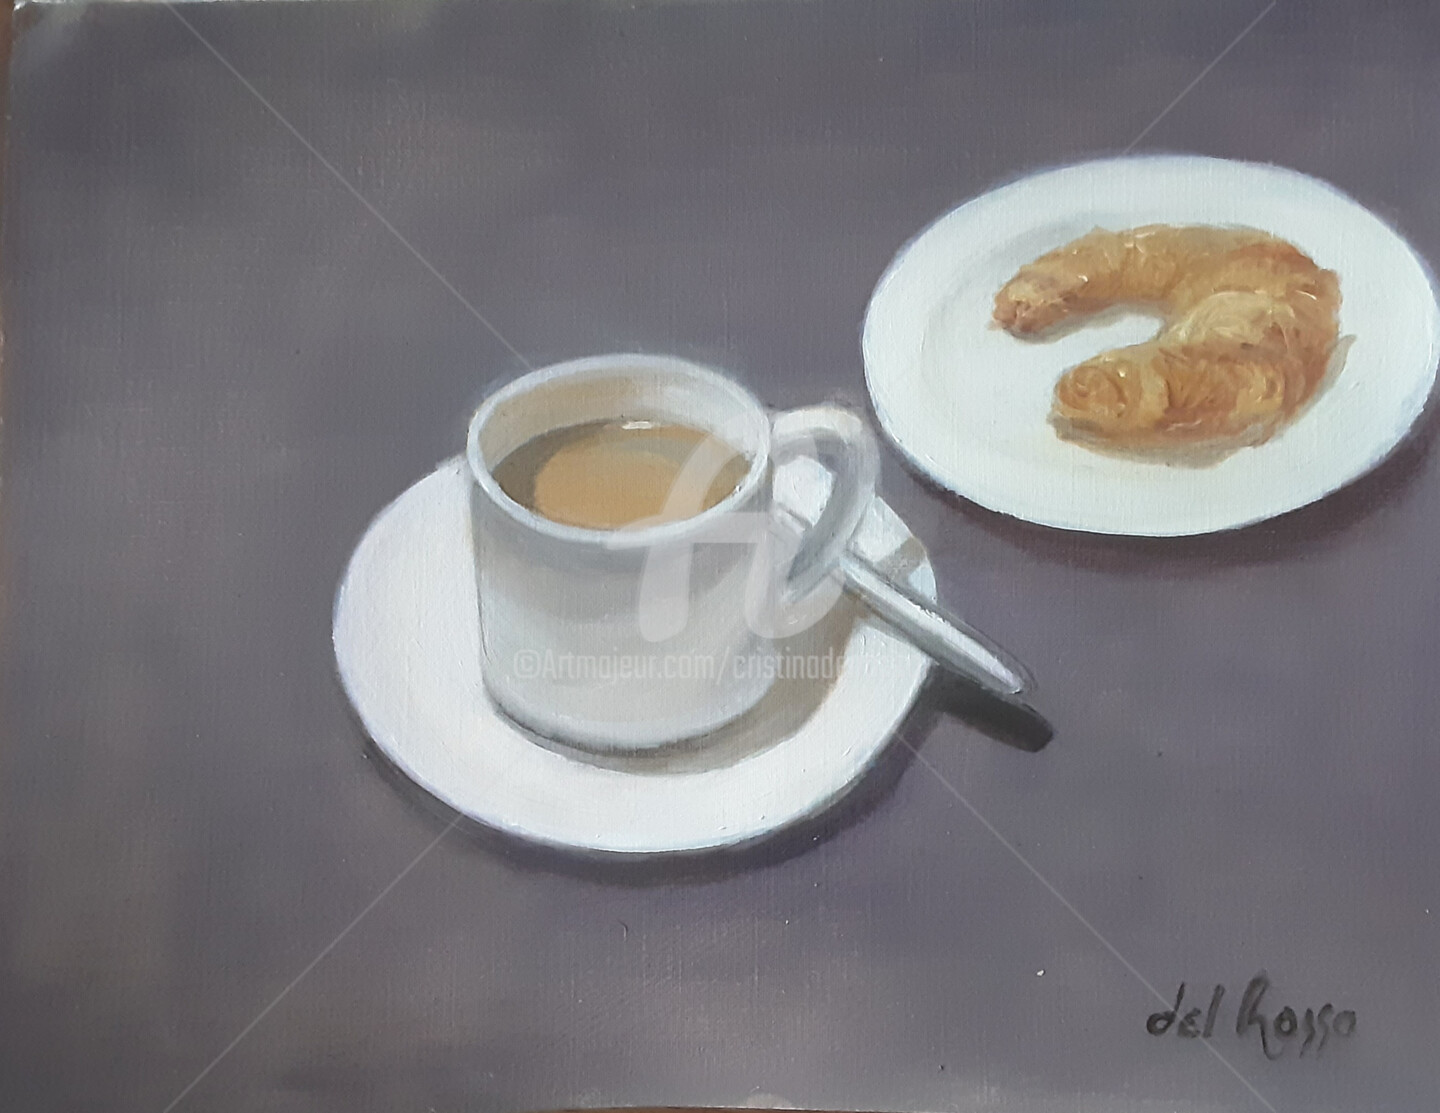 Cristina Del Rosso - Pausa de café (Coffee break)